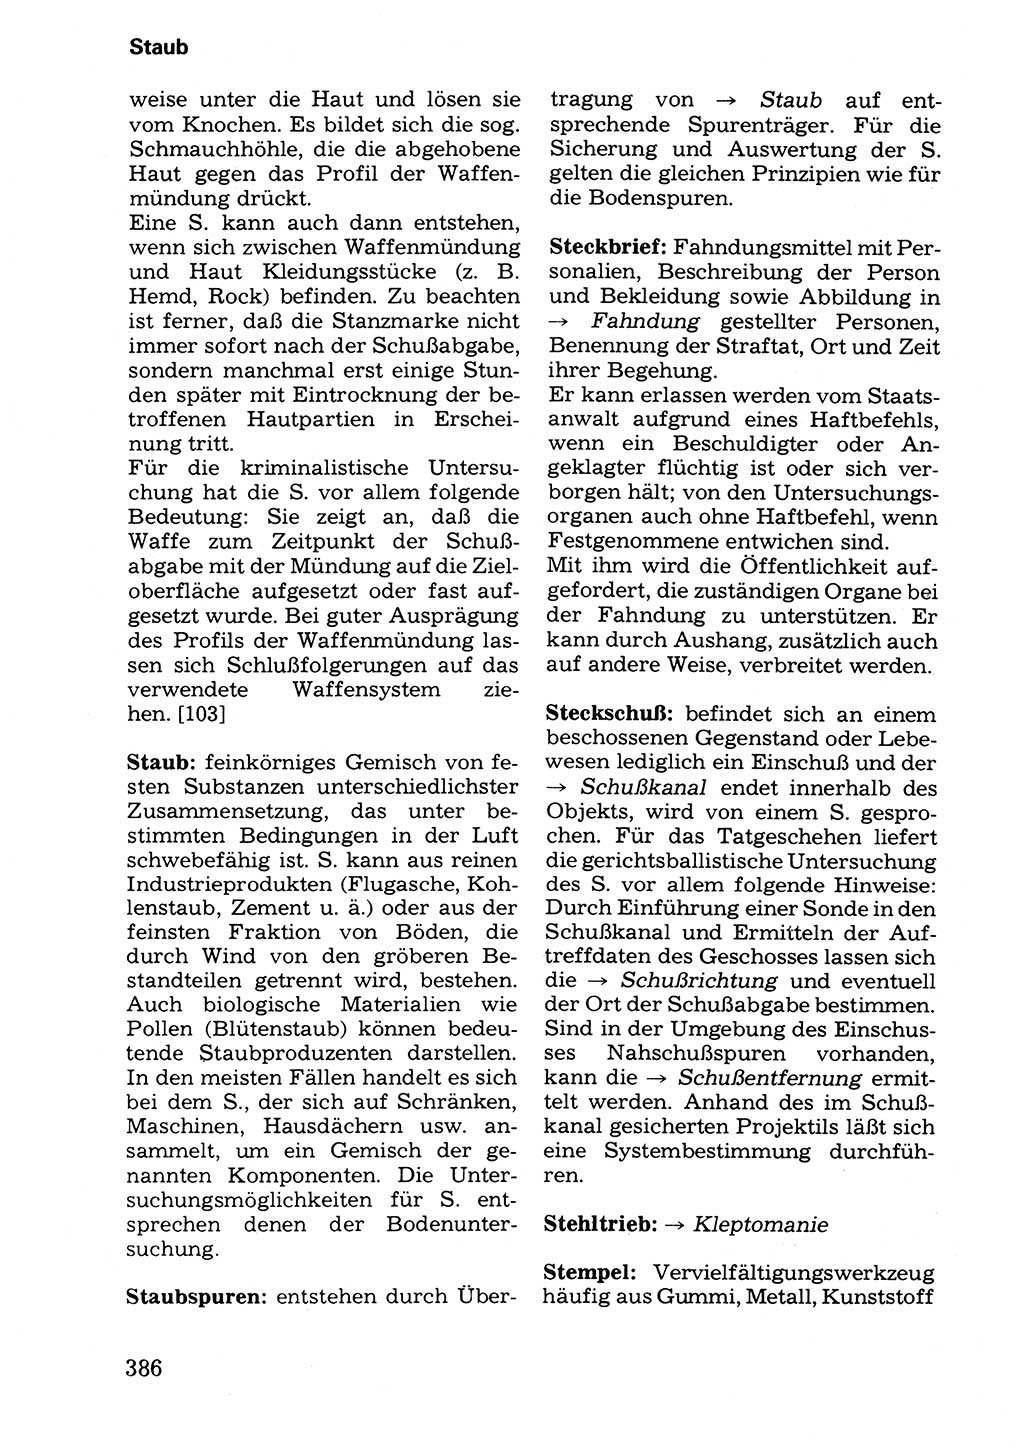 Wörterbuch der sozialistischen Kriminalistik [Deutsche Demokratische Republik (DDR)] 1981, Seite 386 (Wb. soz. Krim. DDR 1981, S. 386)